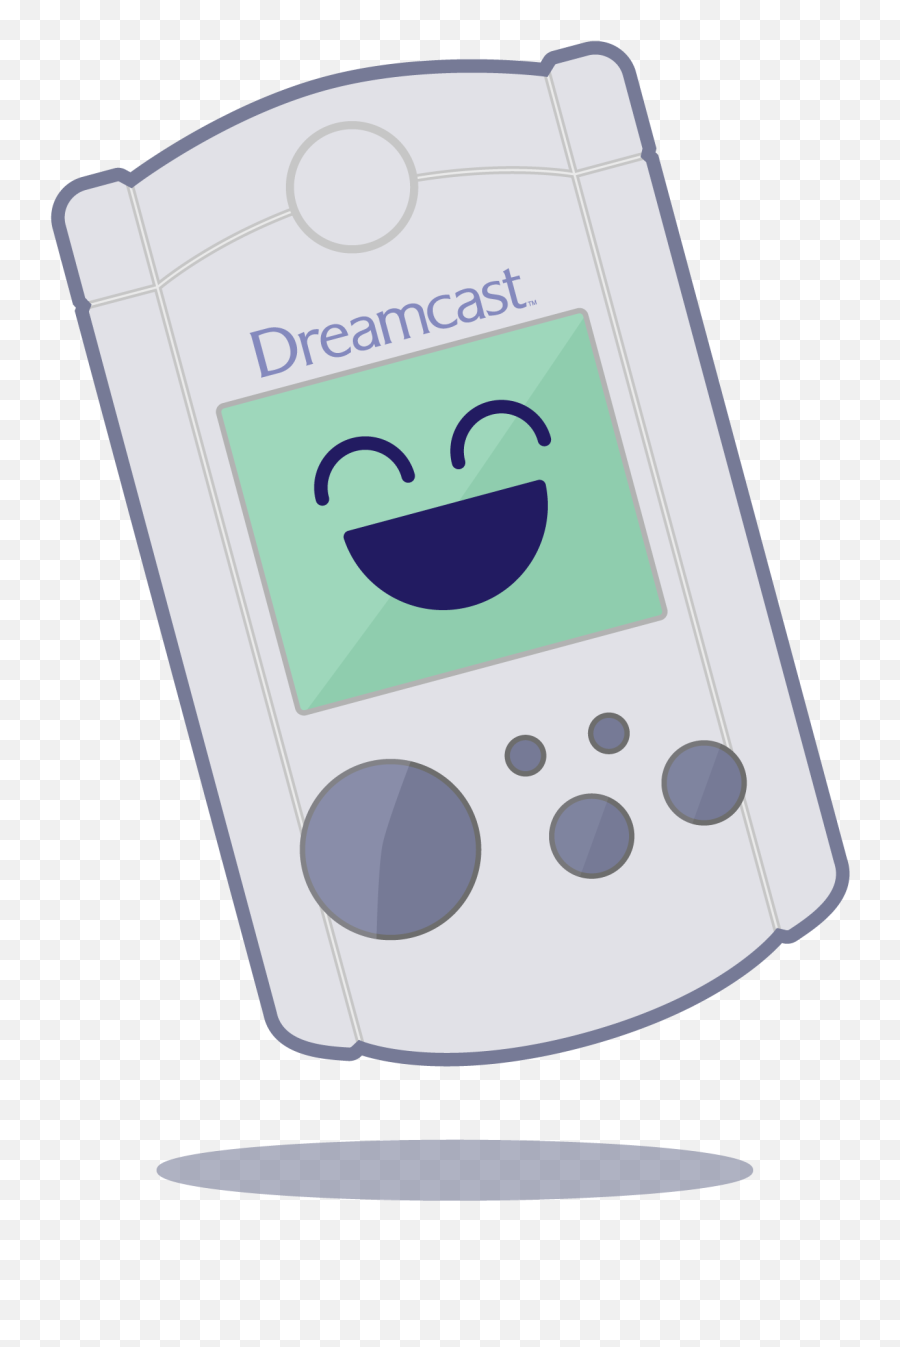 Made A Vmu For You All Dreamcast - Portable Electronic Game Emoji,Sega Dreamcast Logo